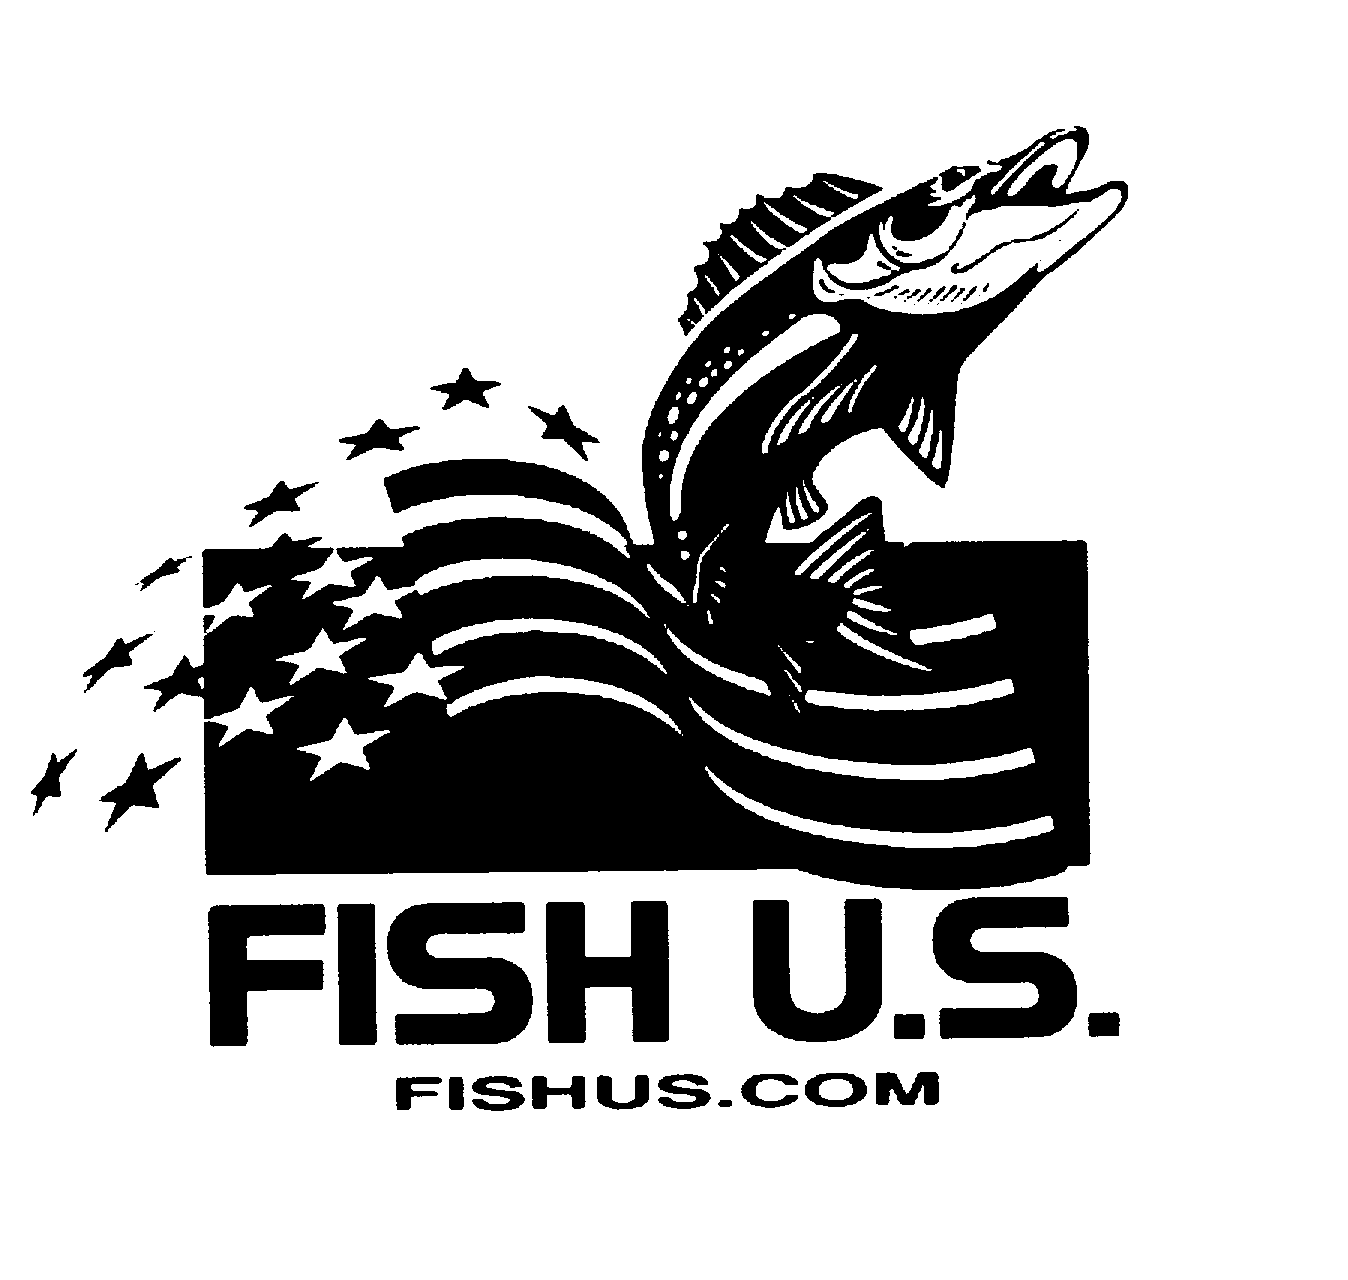  FISH U.S. FISHUS.COM